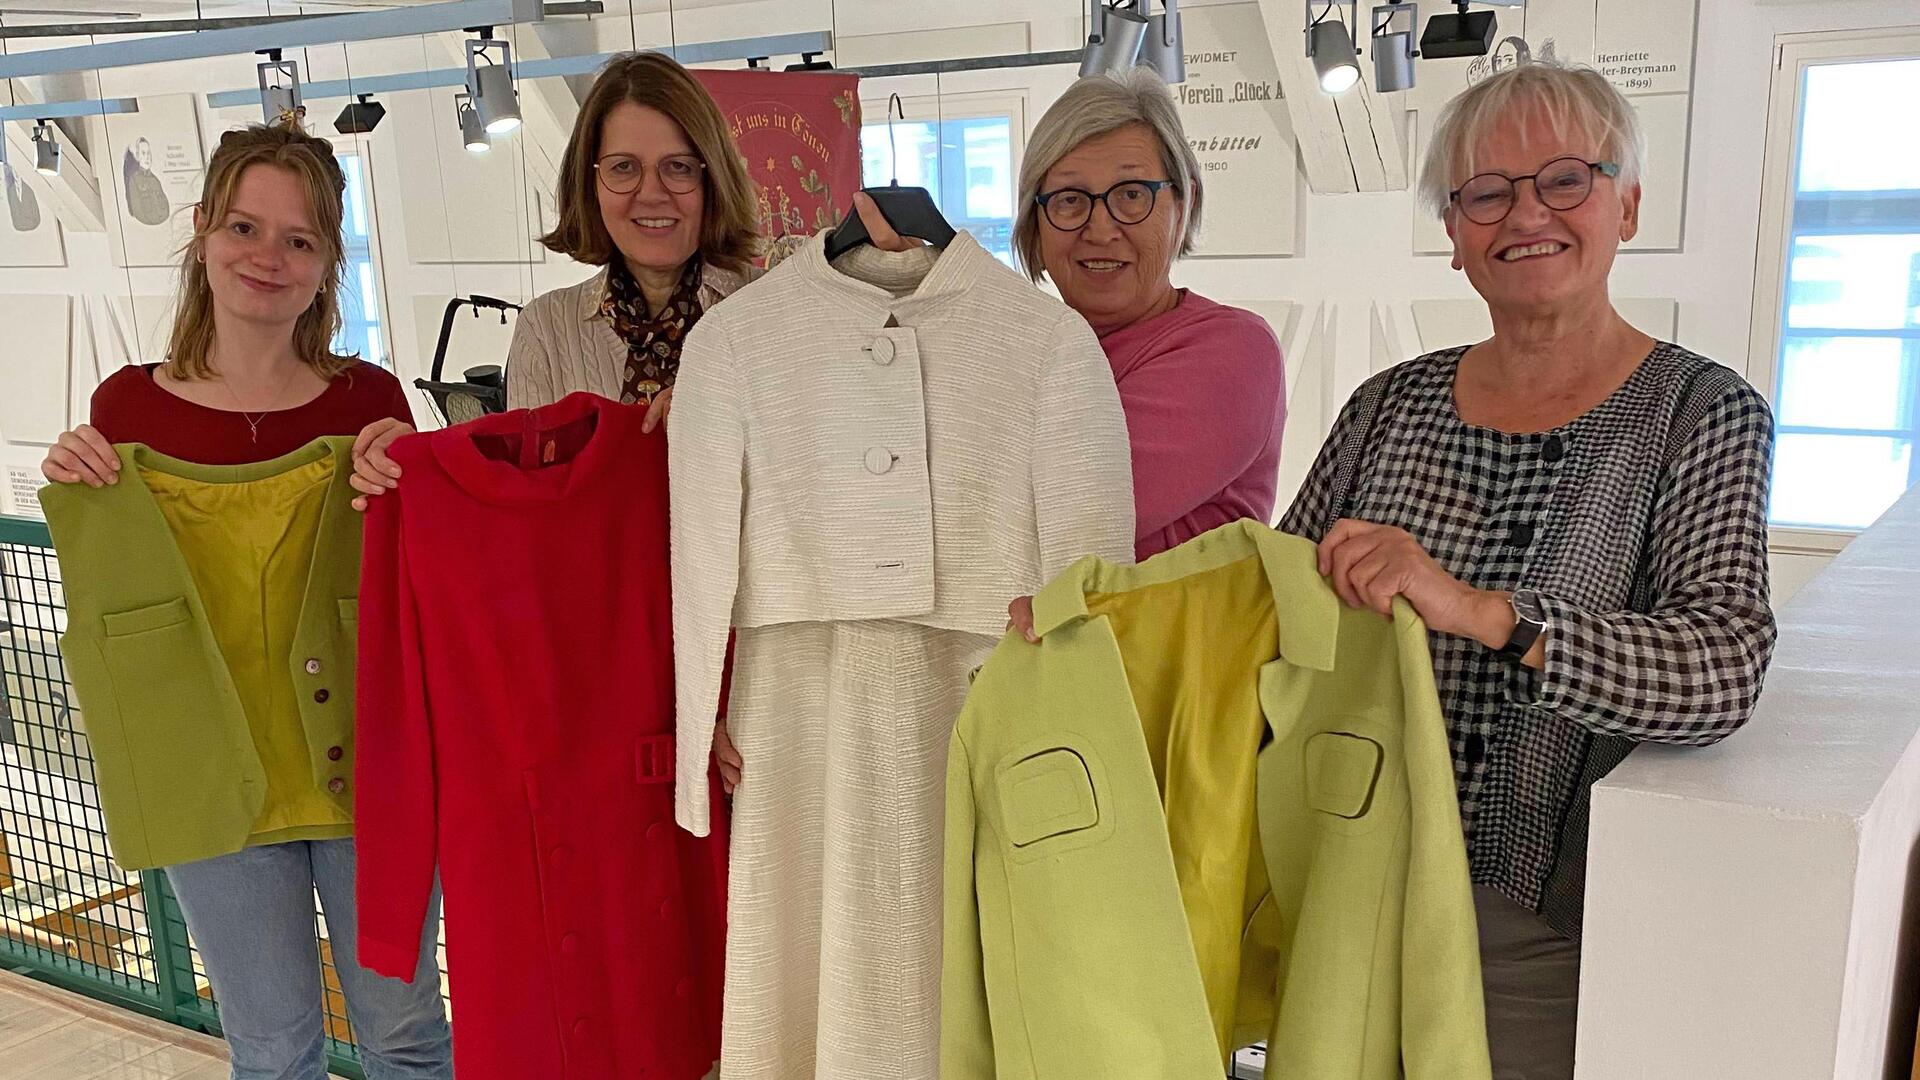 Vier Frauen stehen im Bürger Museum, jede hält ein Kleidungsstück wie eine Jacke oder Kostüm hoch.